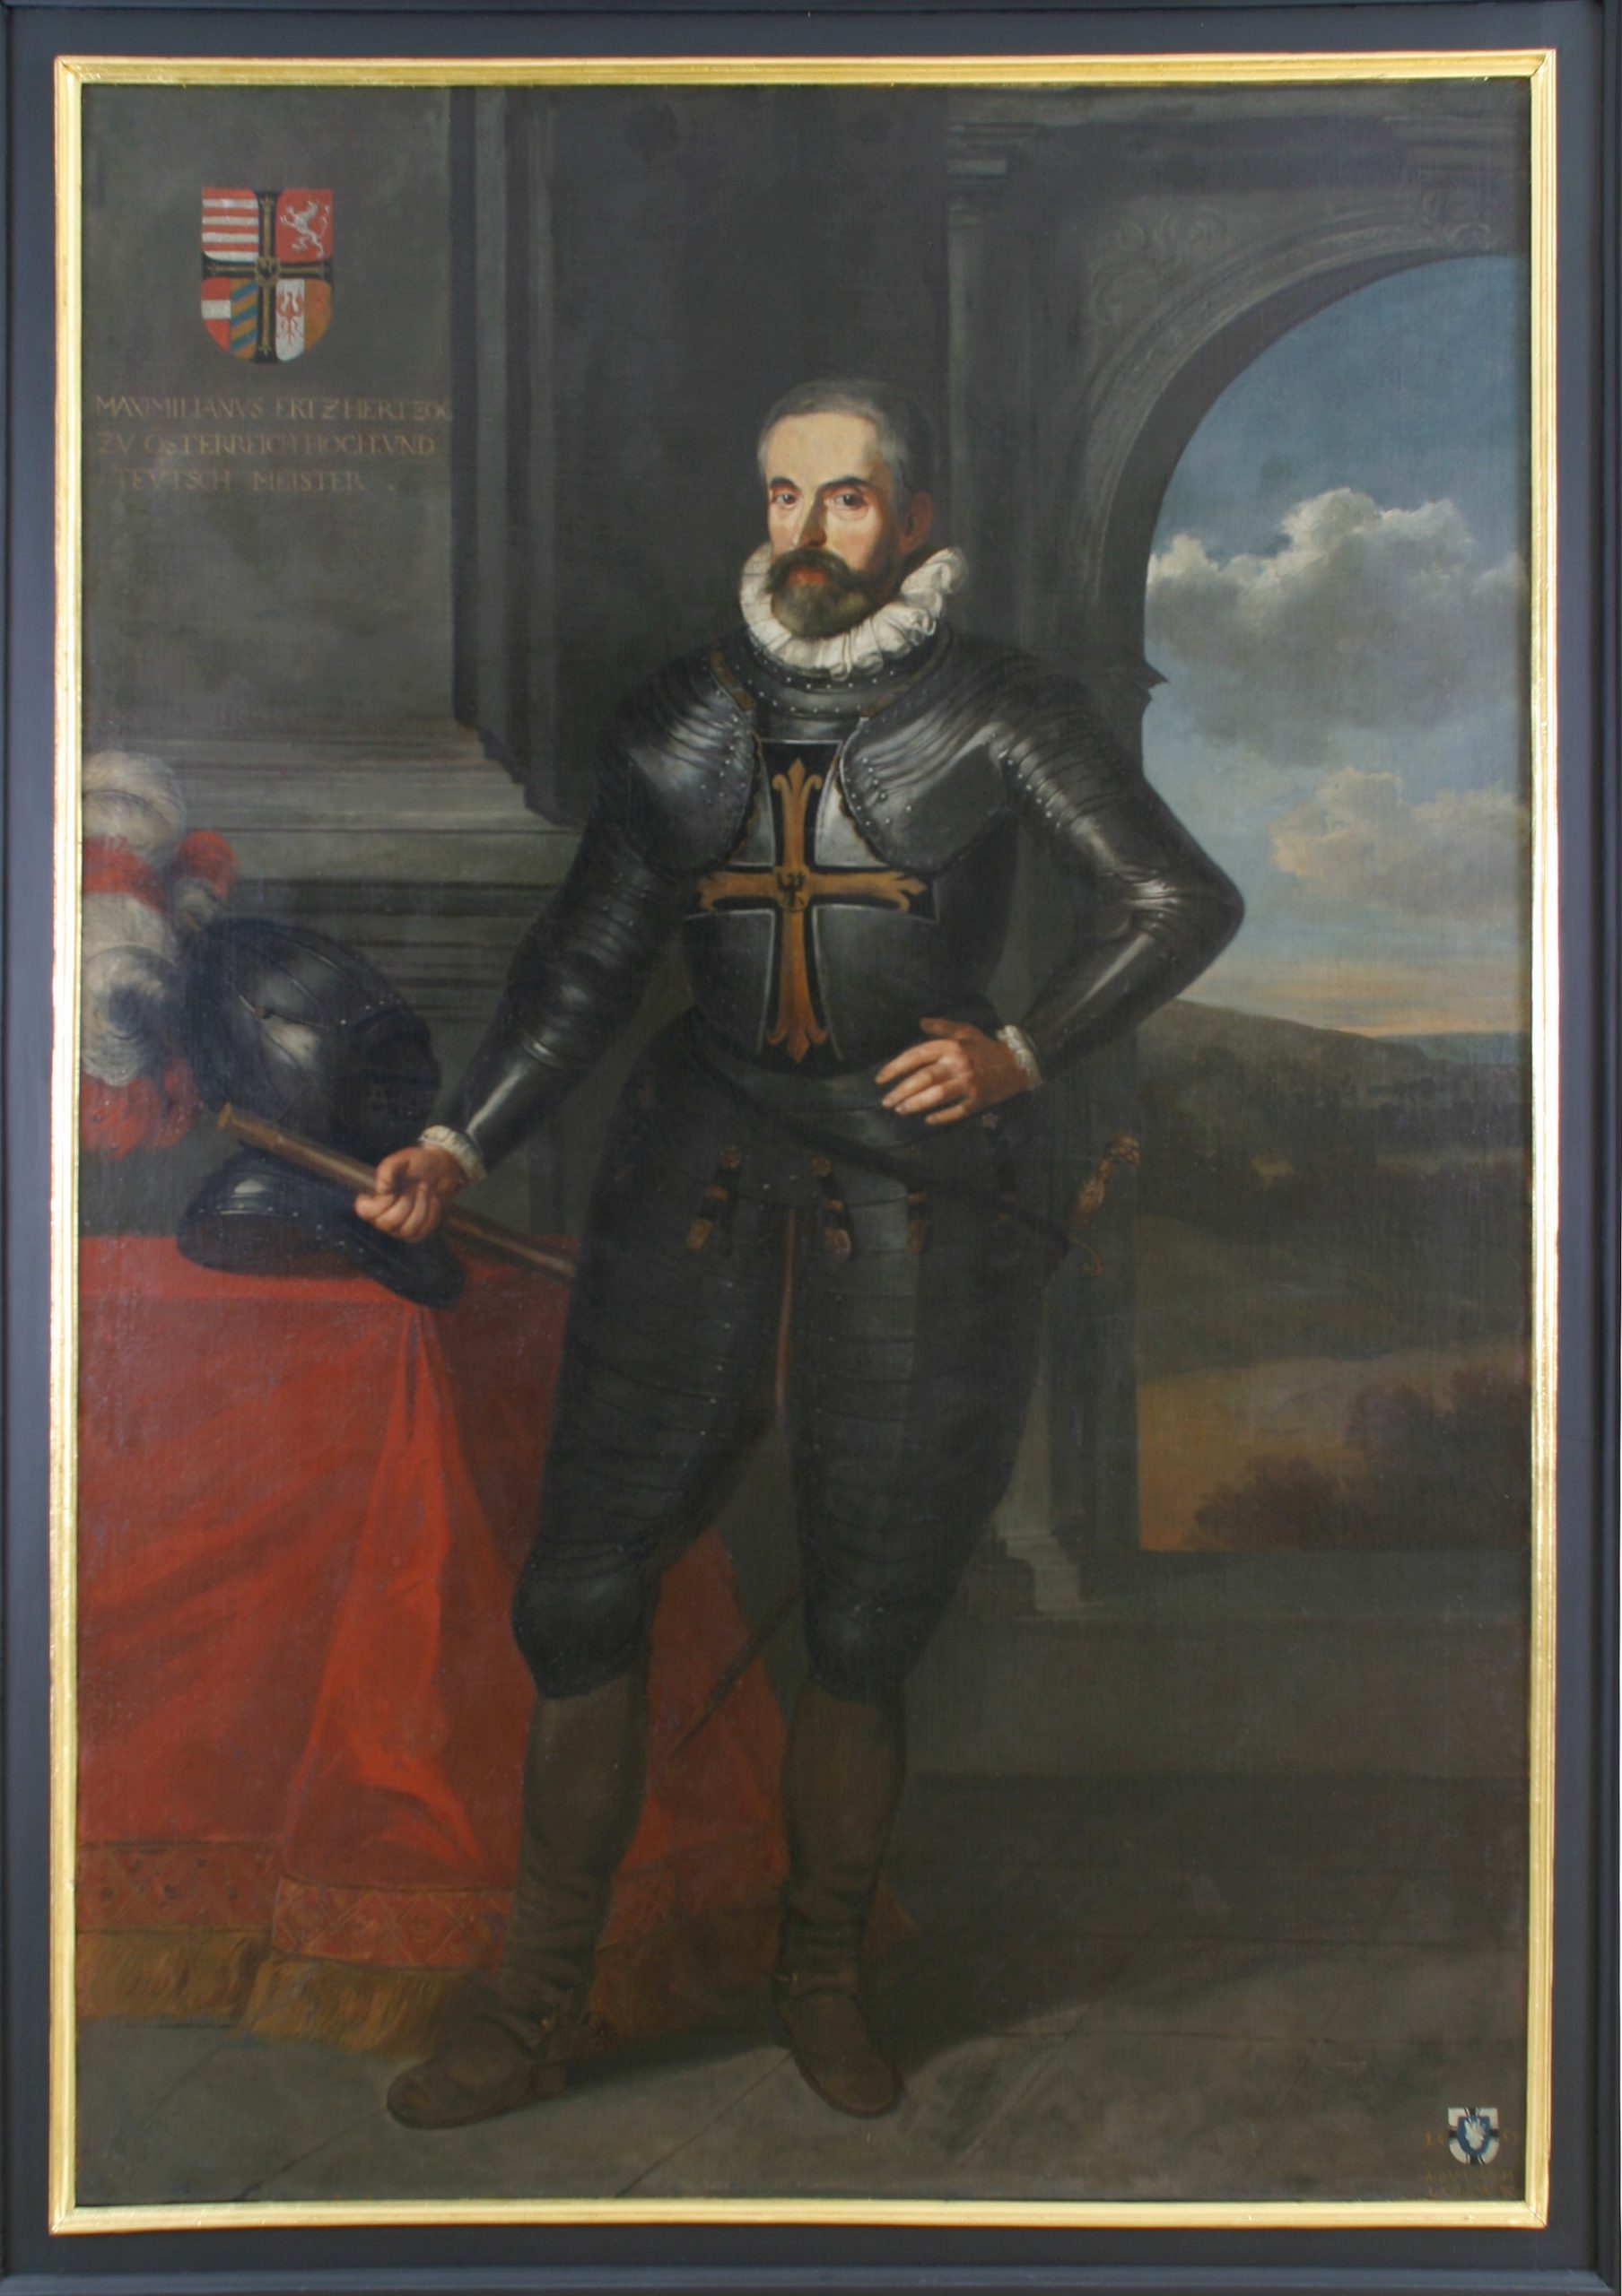 Das Bild zeigt ein Porträt des Hochmeisters Maximilian von Österreich. Er trägt eine Ritterrüstng und neben ihm liegt ein Ritterhelm. Oben links in der Ecke ist das Hochmeisterwappen abgebildet.